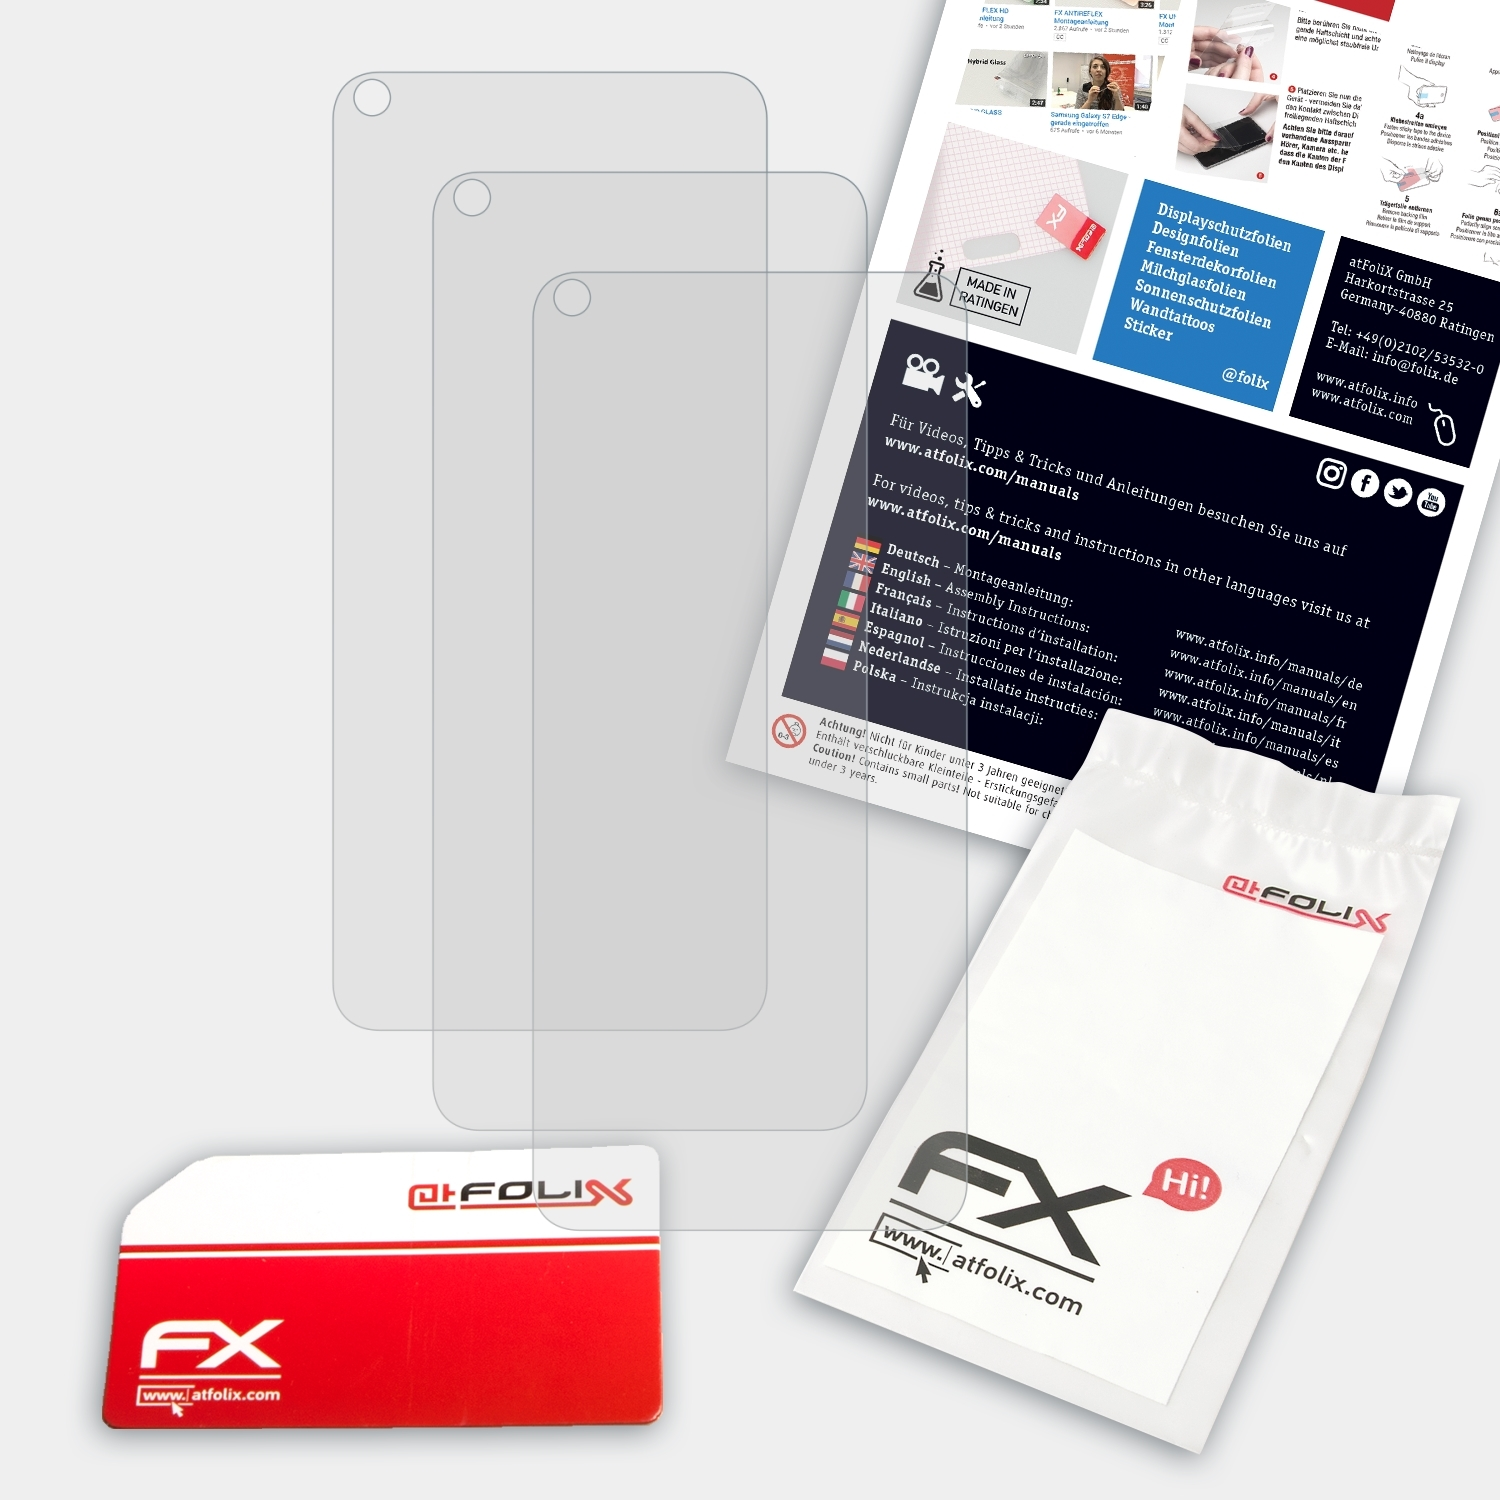 FX-Antireflex Note Xiaomi Displayschutz(für ATFOLIX 3x Redmi 9T)